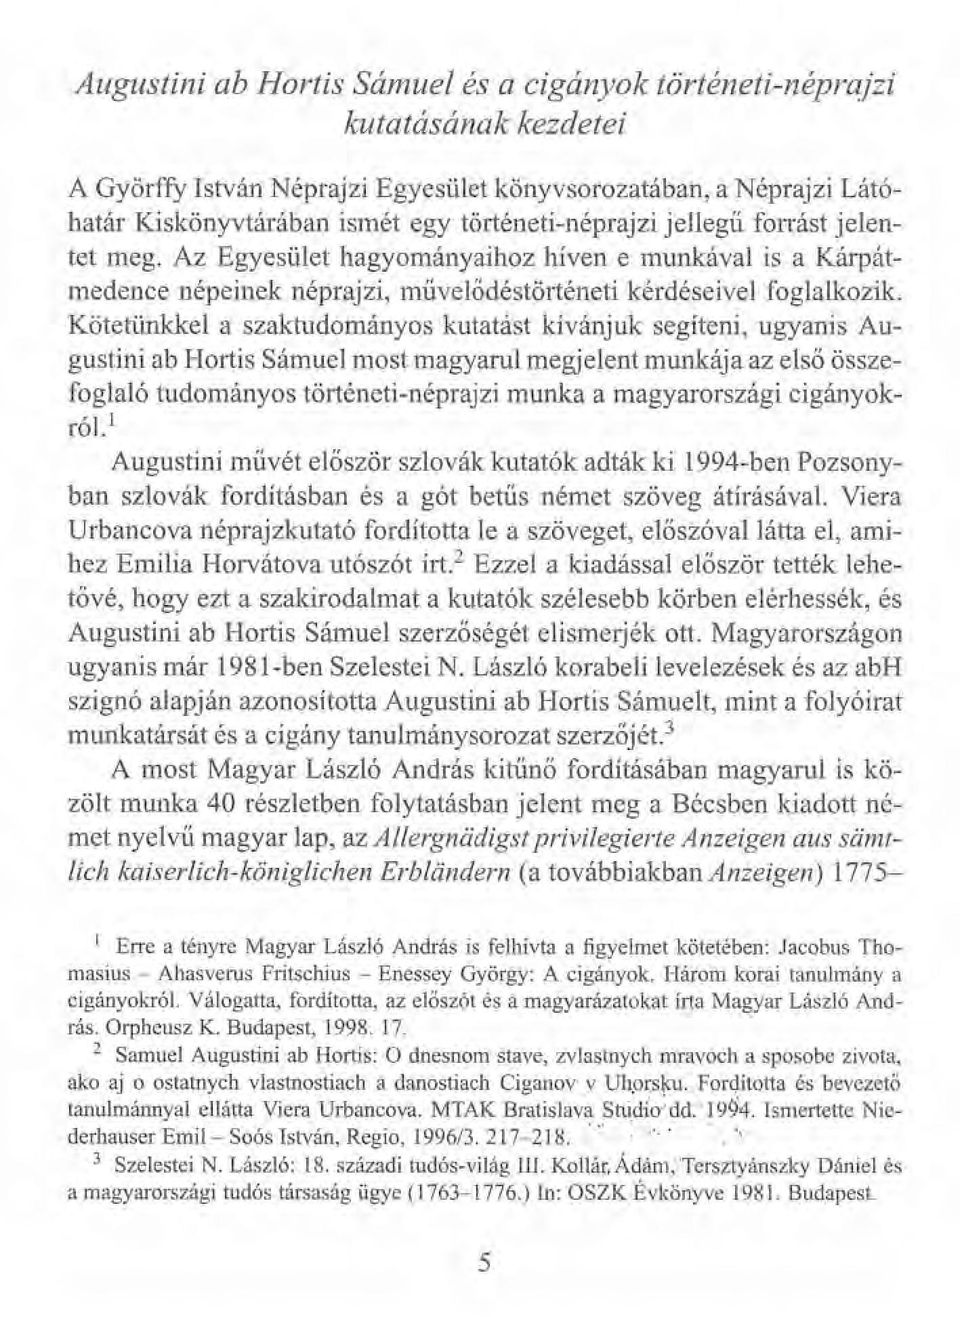 Kötetünkkel a szaktudományos kutatást kívánjuk segíteni, ugyanis Augustini ab Hortis Sámuel most magyarul megjelent munkája az első összefoglaló tudományos történeti-néprajzi munka a magyarországi